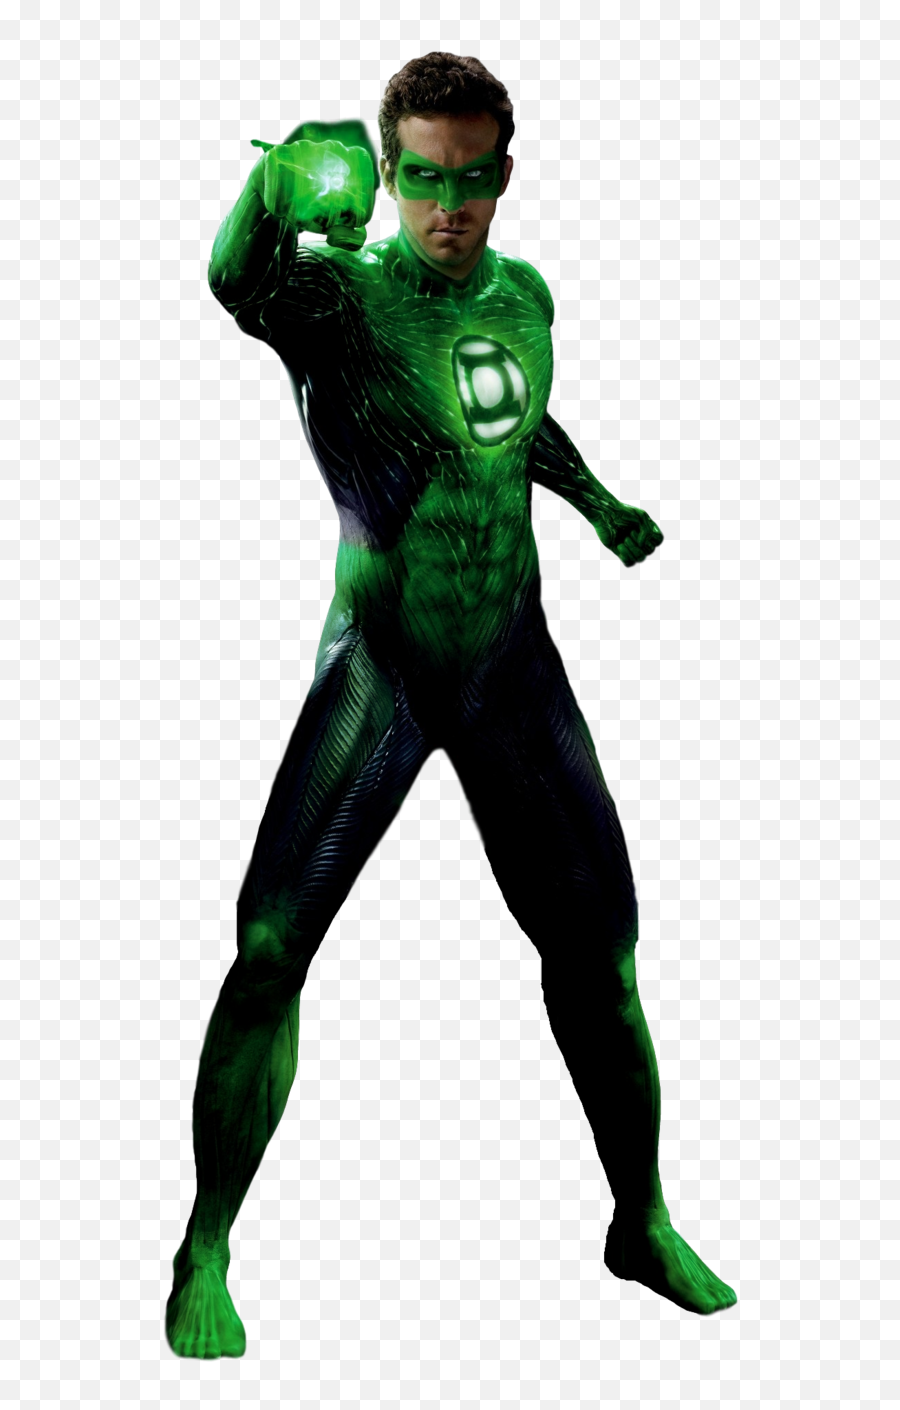 Green - Green Lantern Transparent Png,Green Lantern Transparent